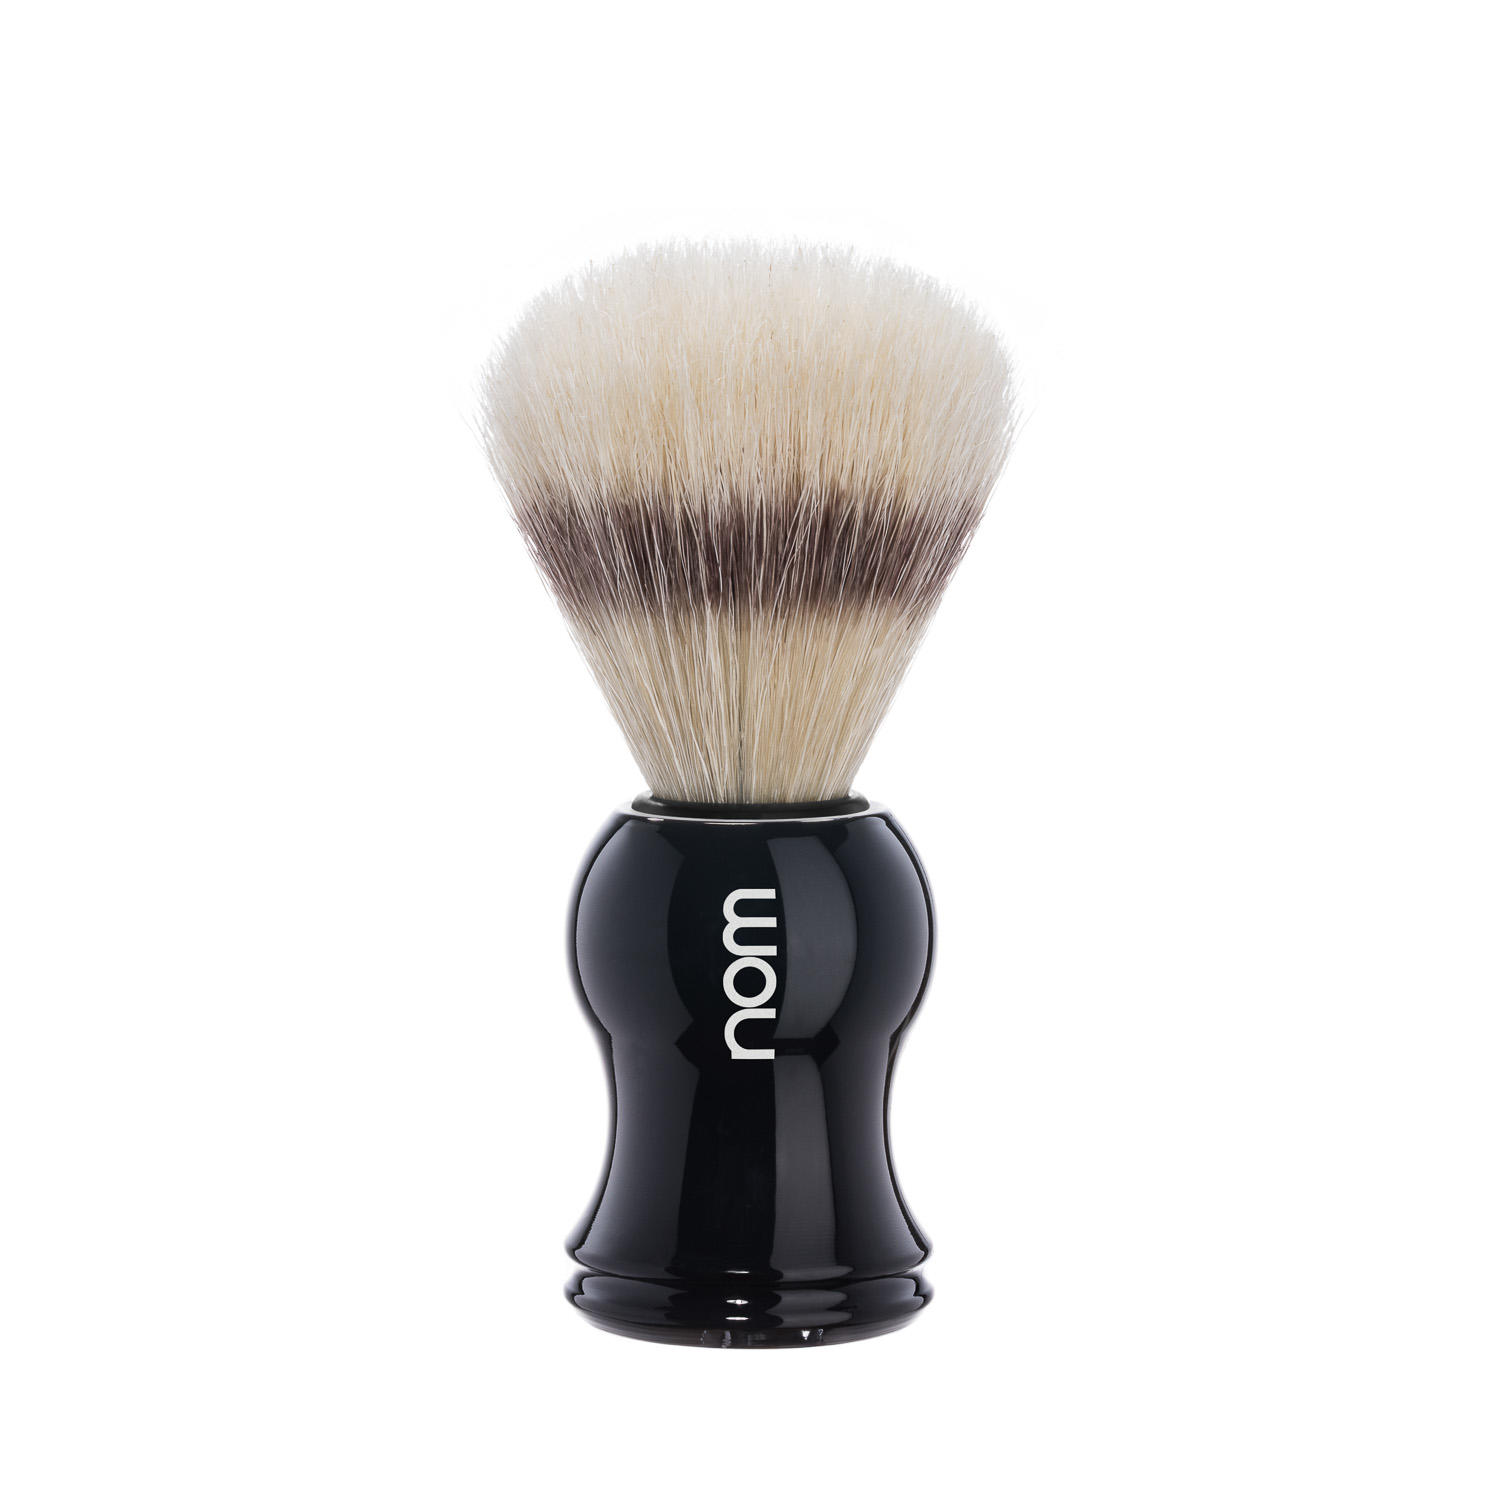 GUSTAV41BL nom, GUSTAV Black, Pure Bristle Shaving Brush